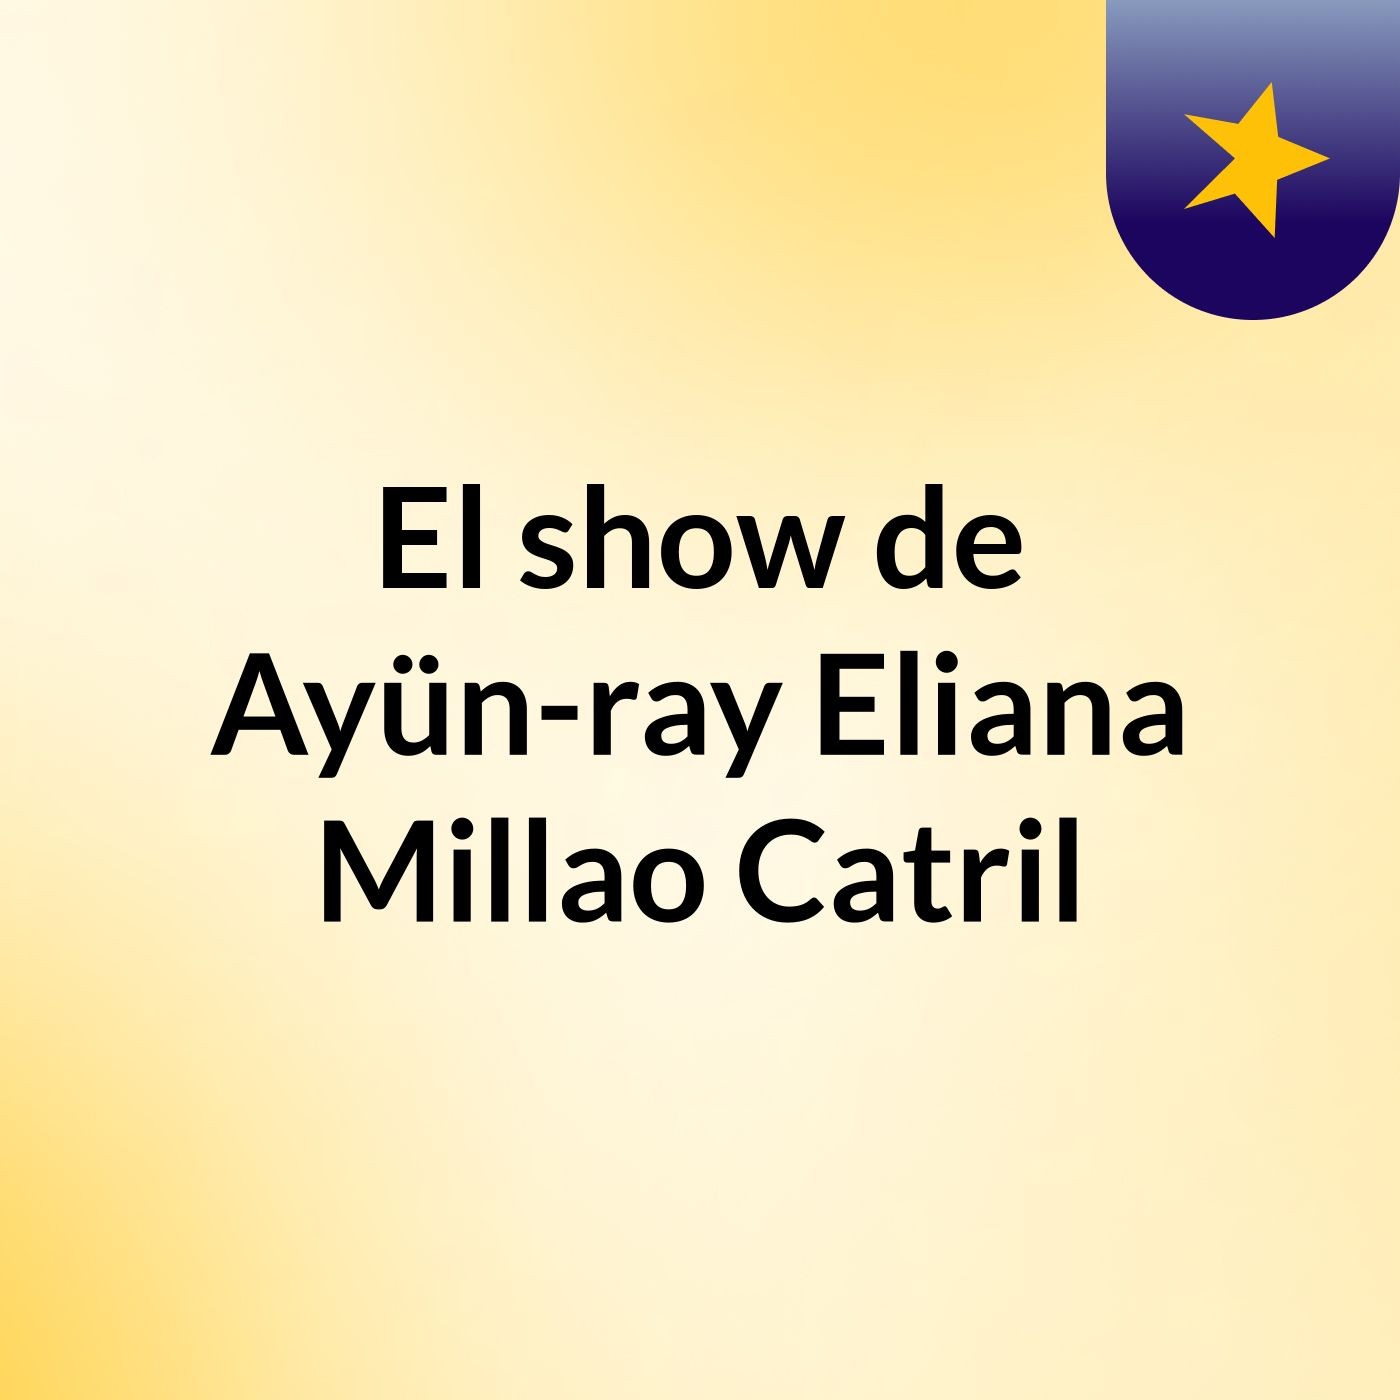 El show de Ayün-ray Eliana Millao Catril